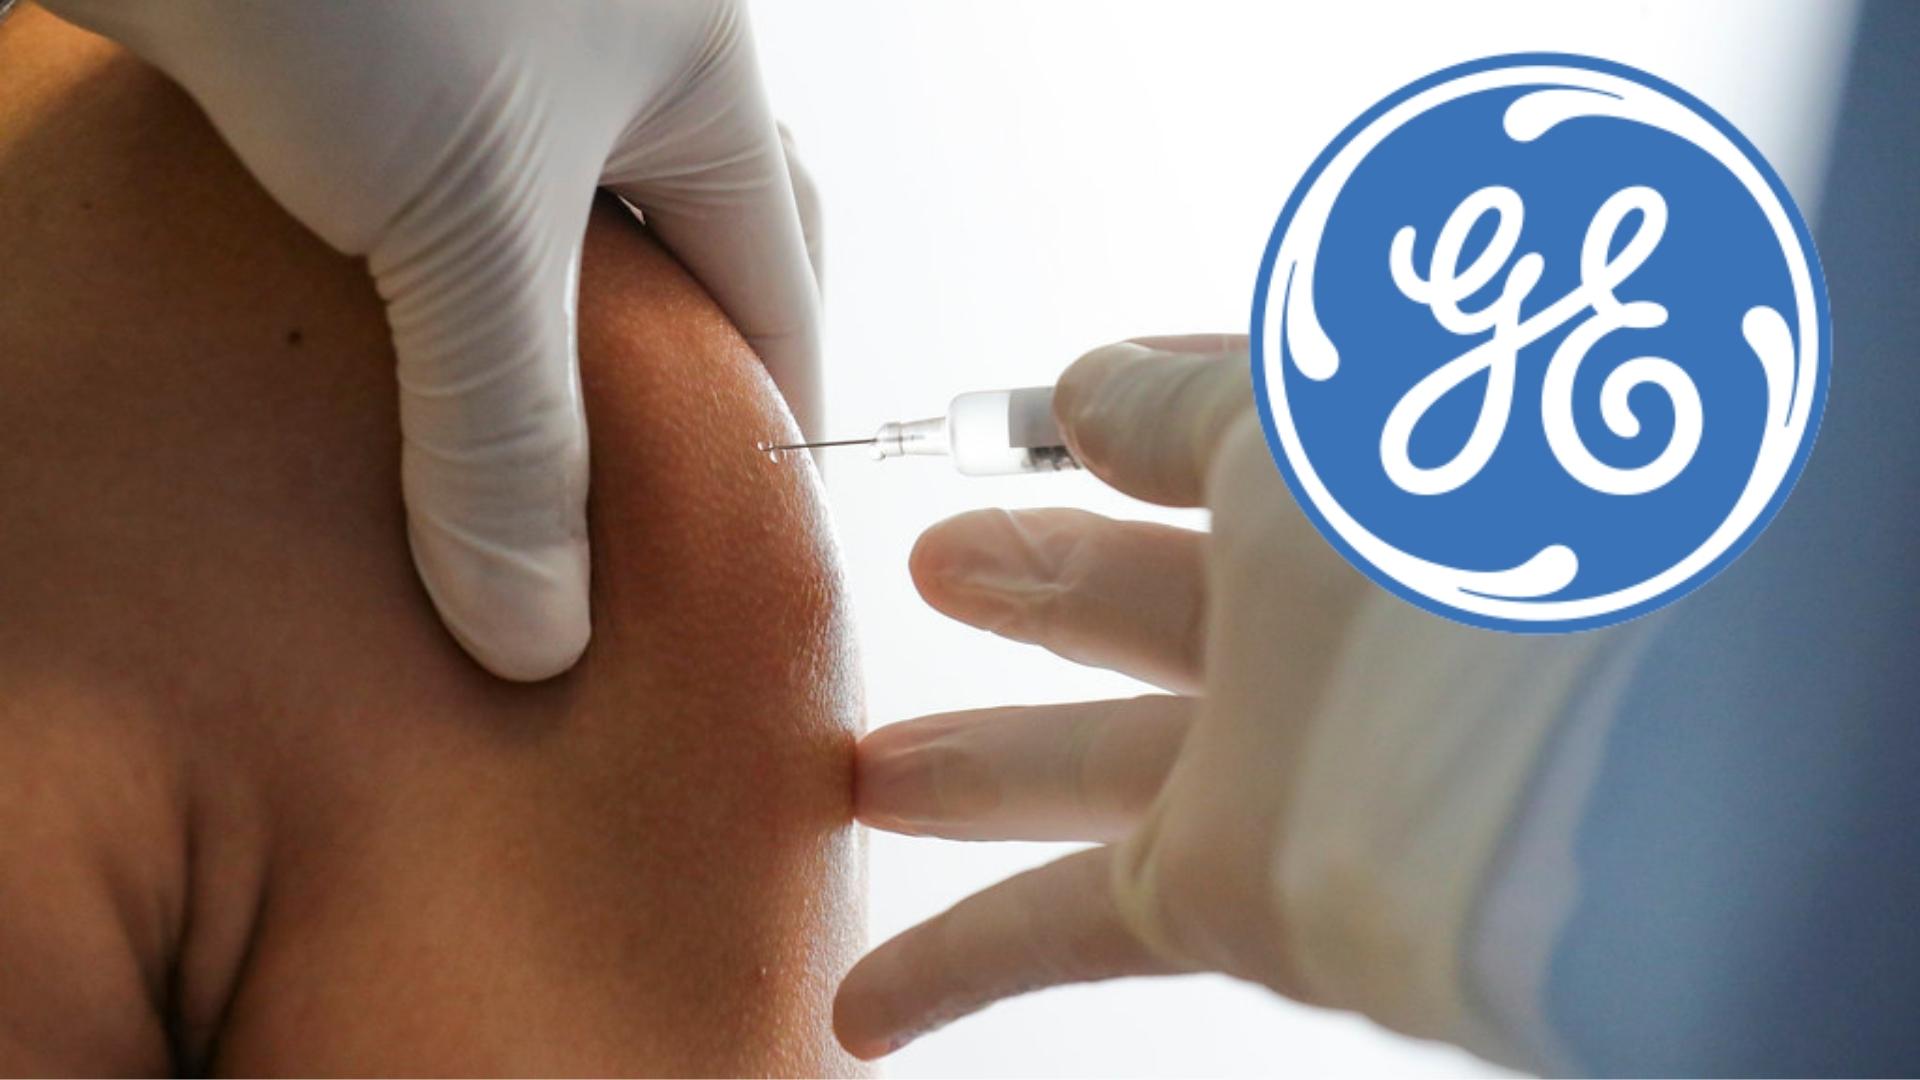 Vacunación y logo de General Electric. Fotomontaje: ADN Cuba